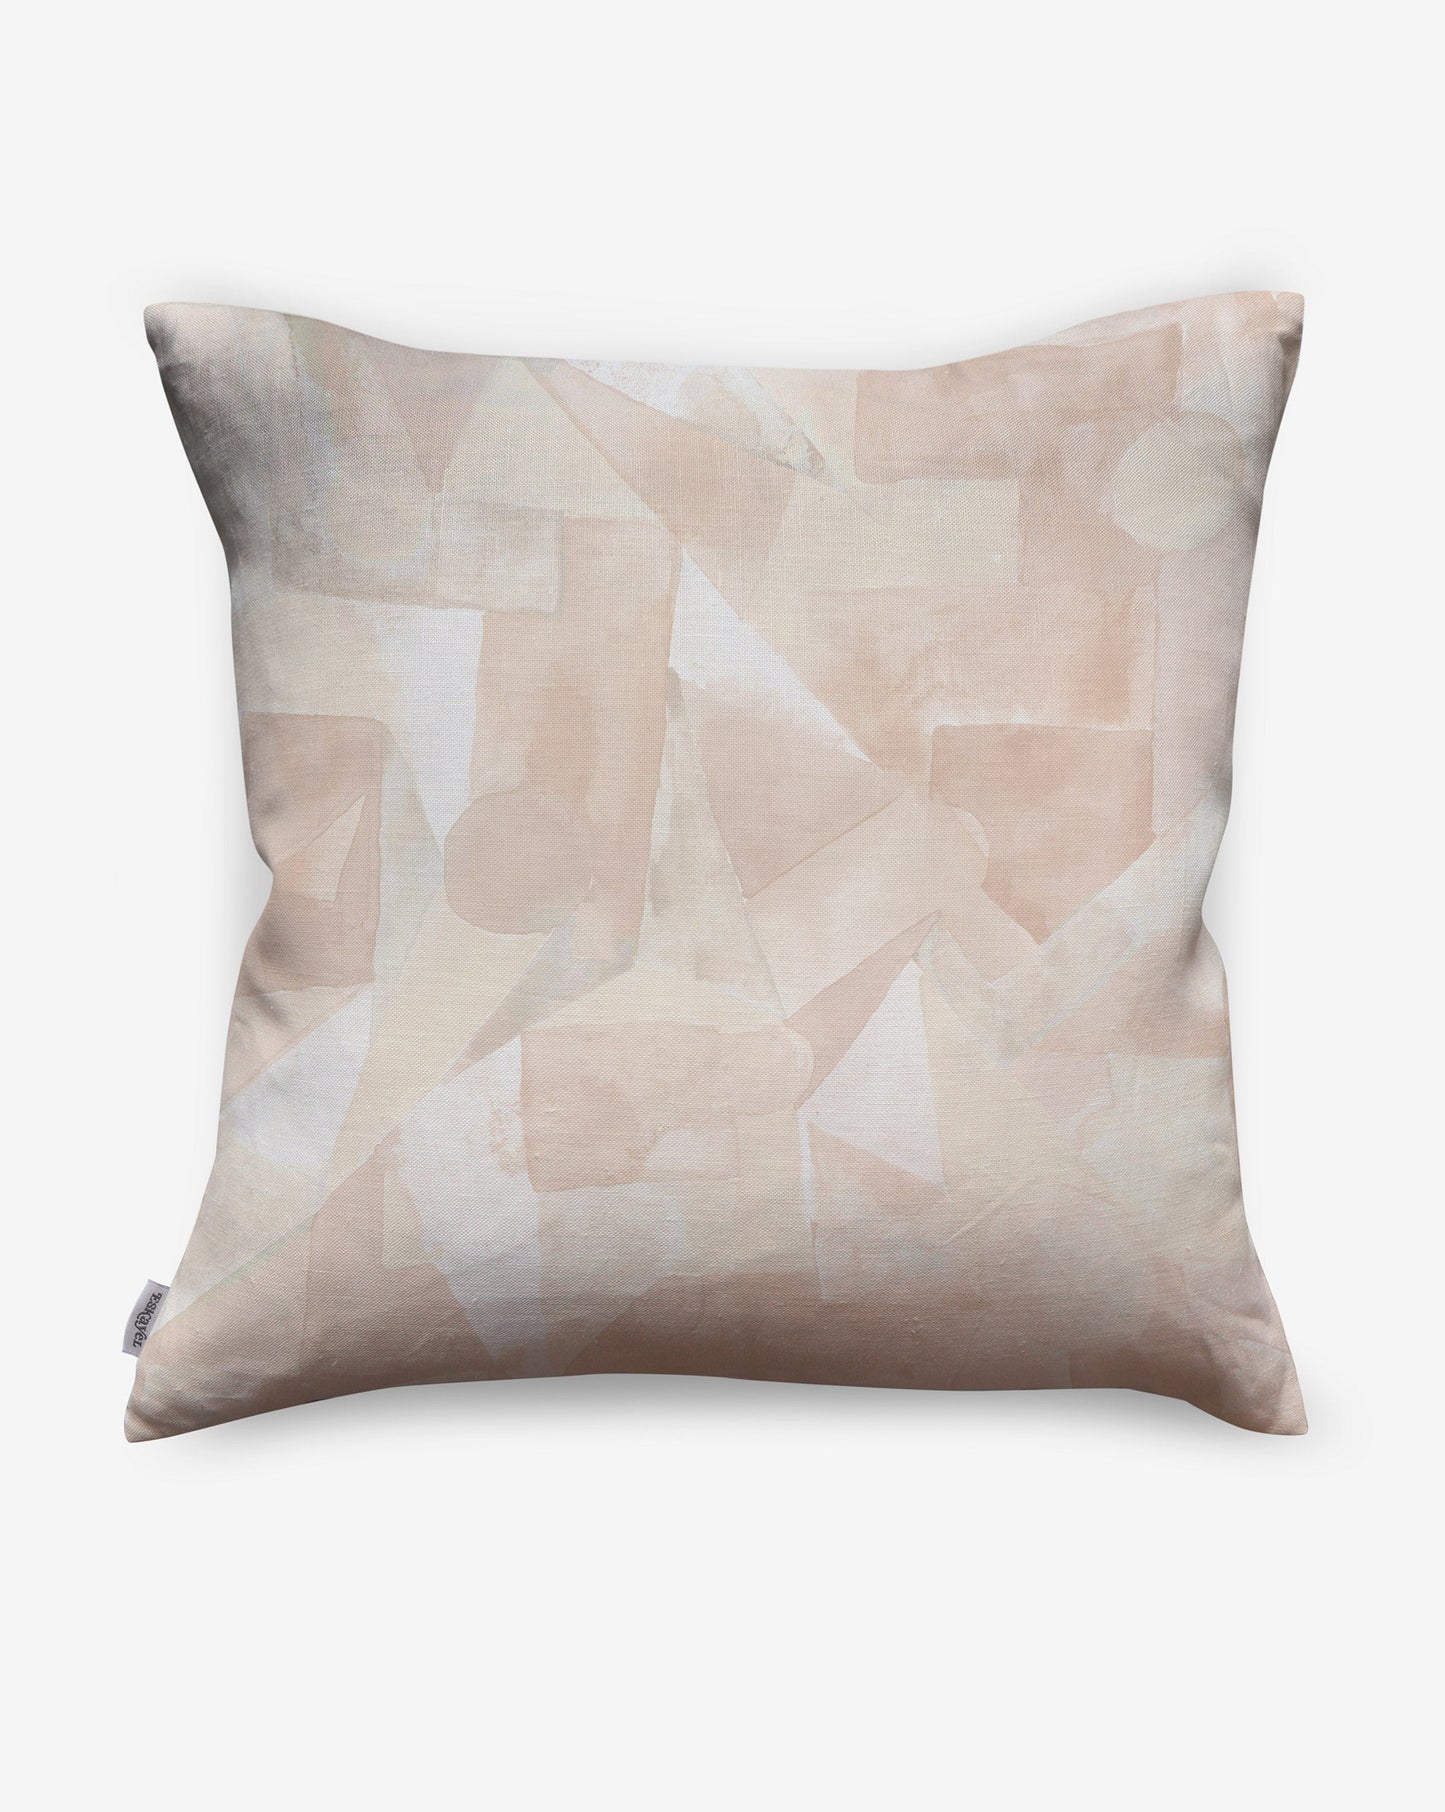 In Pieces pillows in Quartz, beige blocks of pigment depict puzzle pieces. 